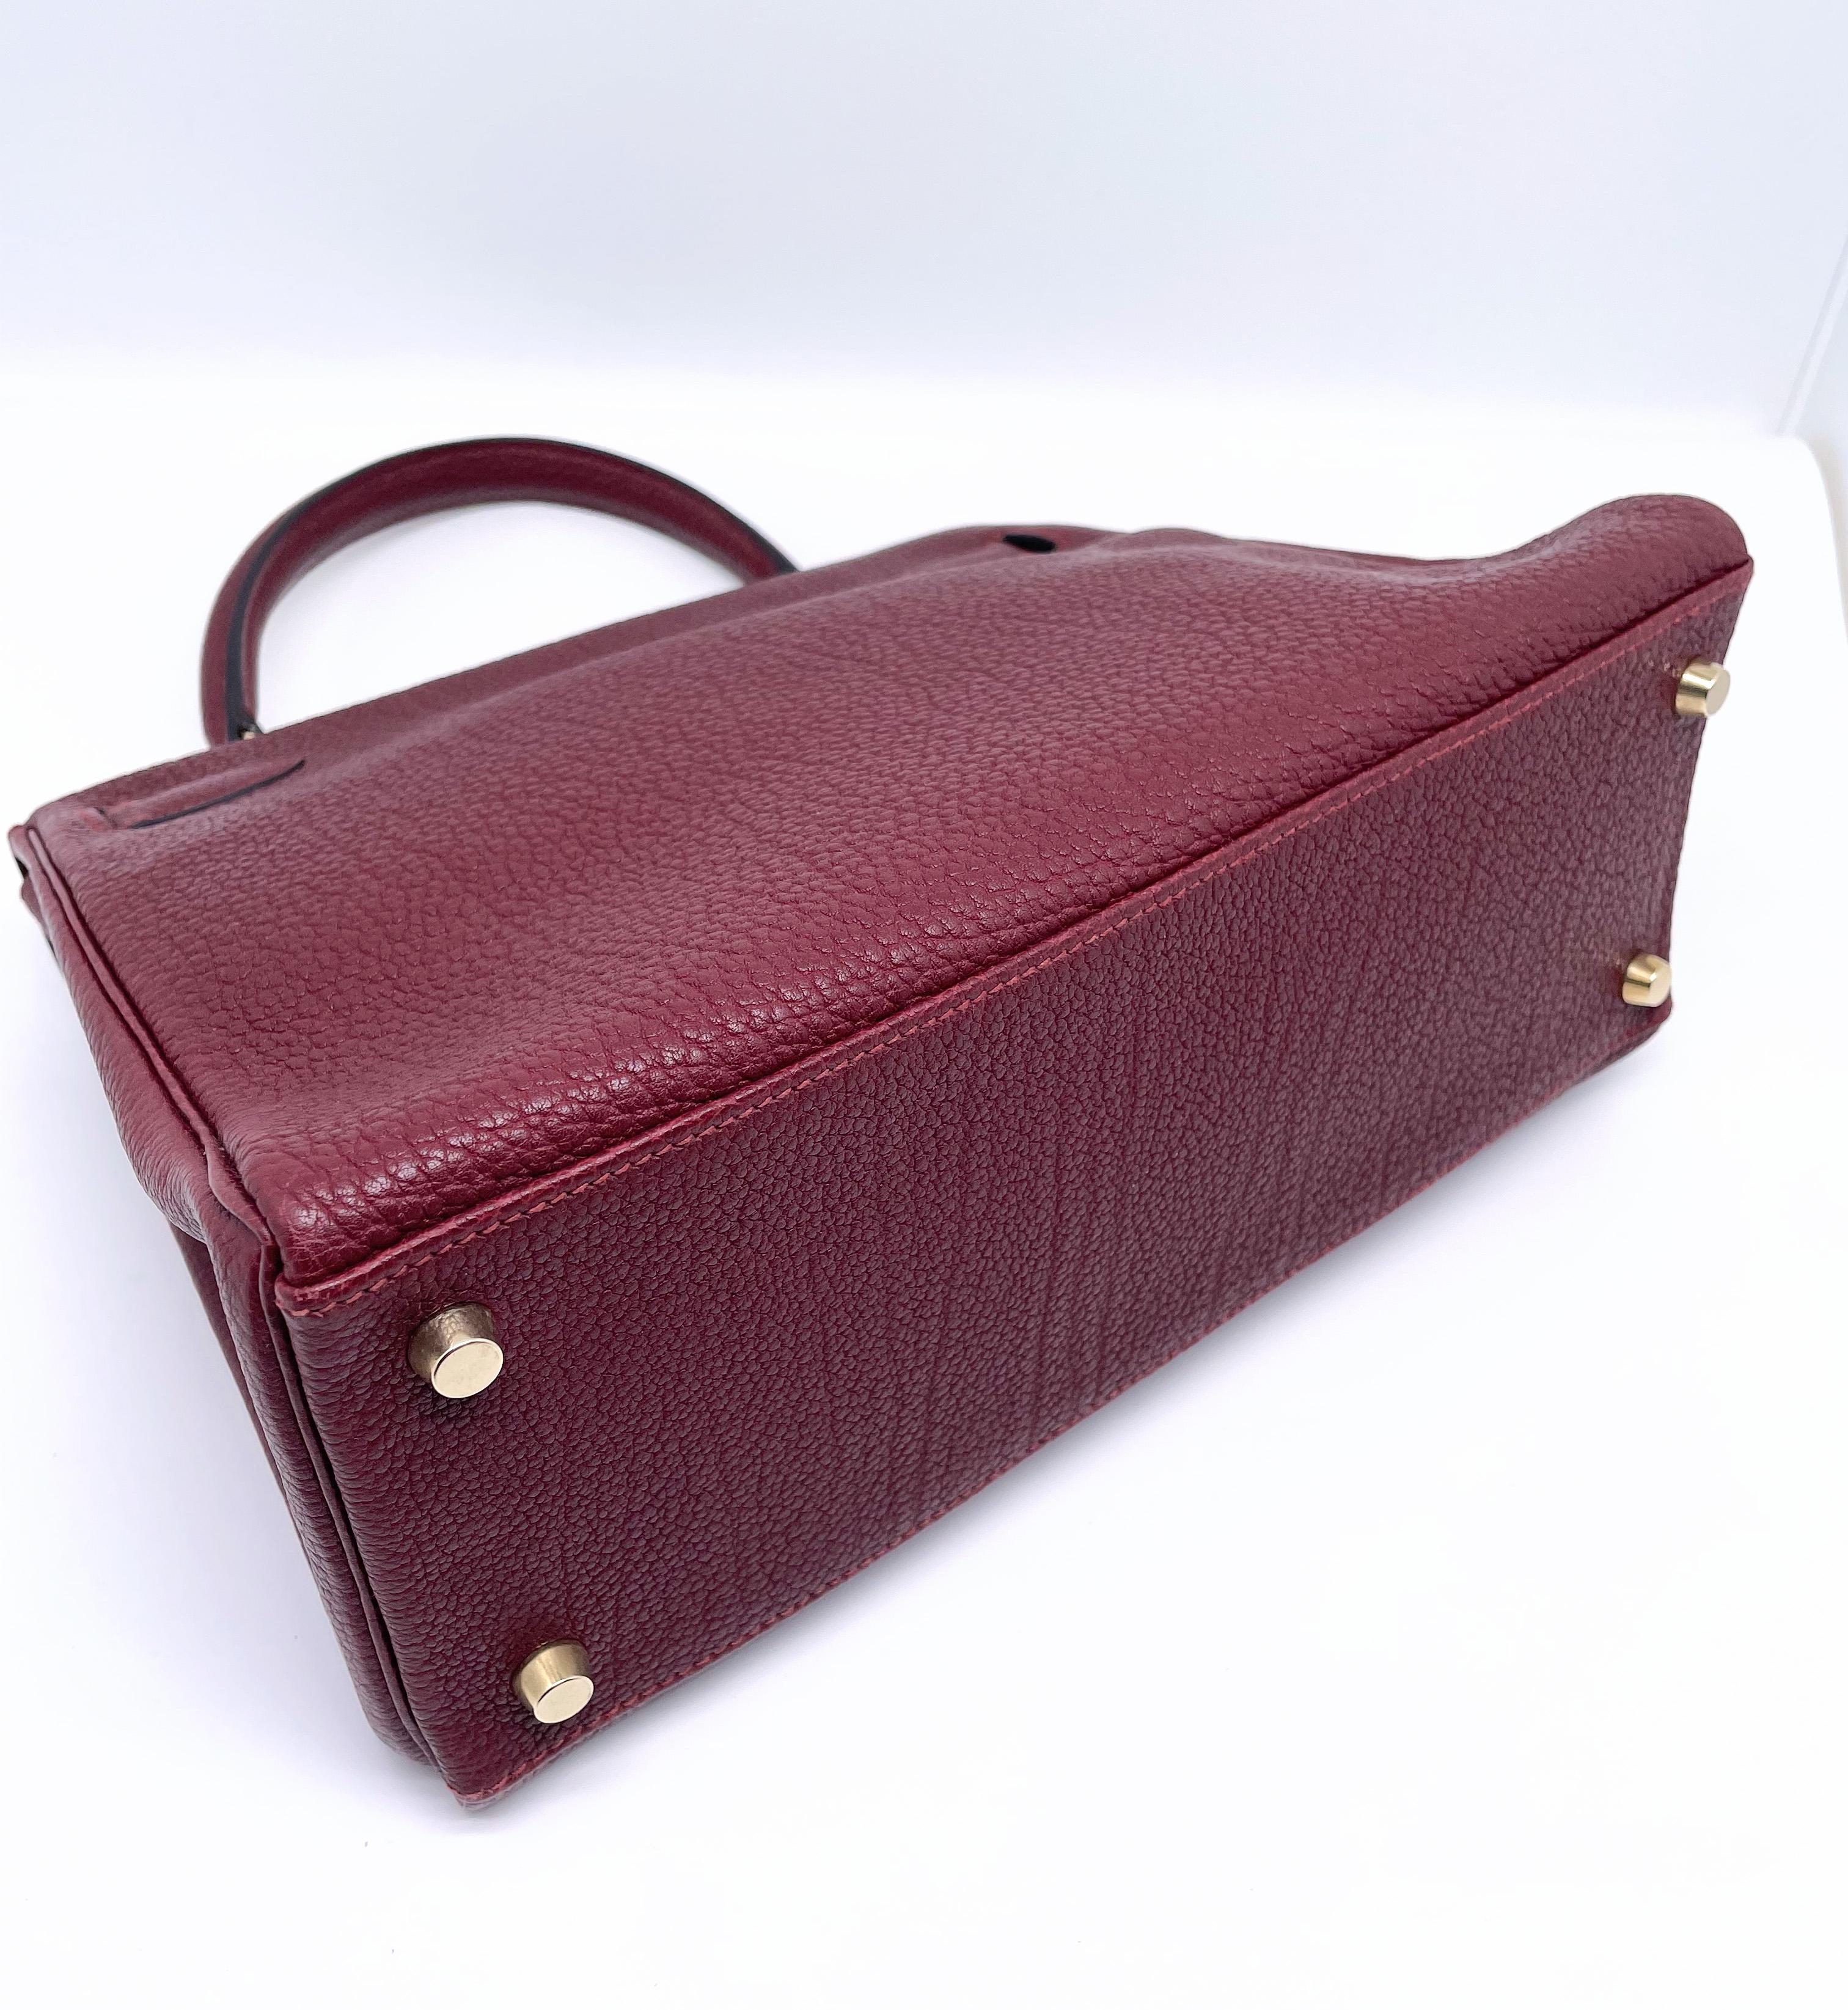 Hermes Kelly bag Returned Burgundy Togo leather 28 cm 3